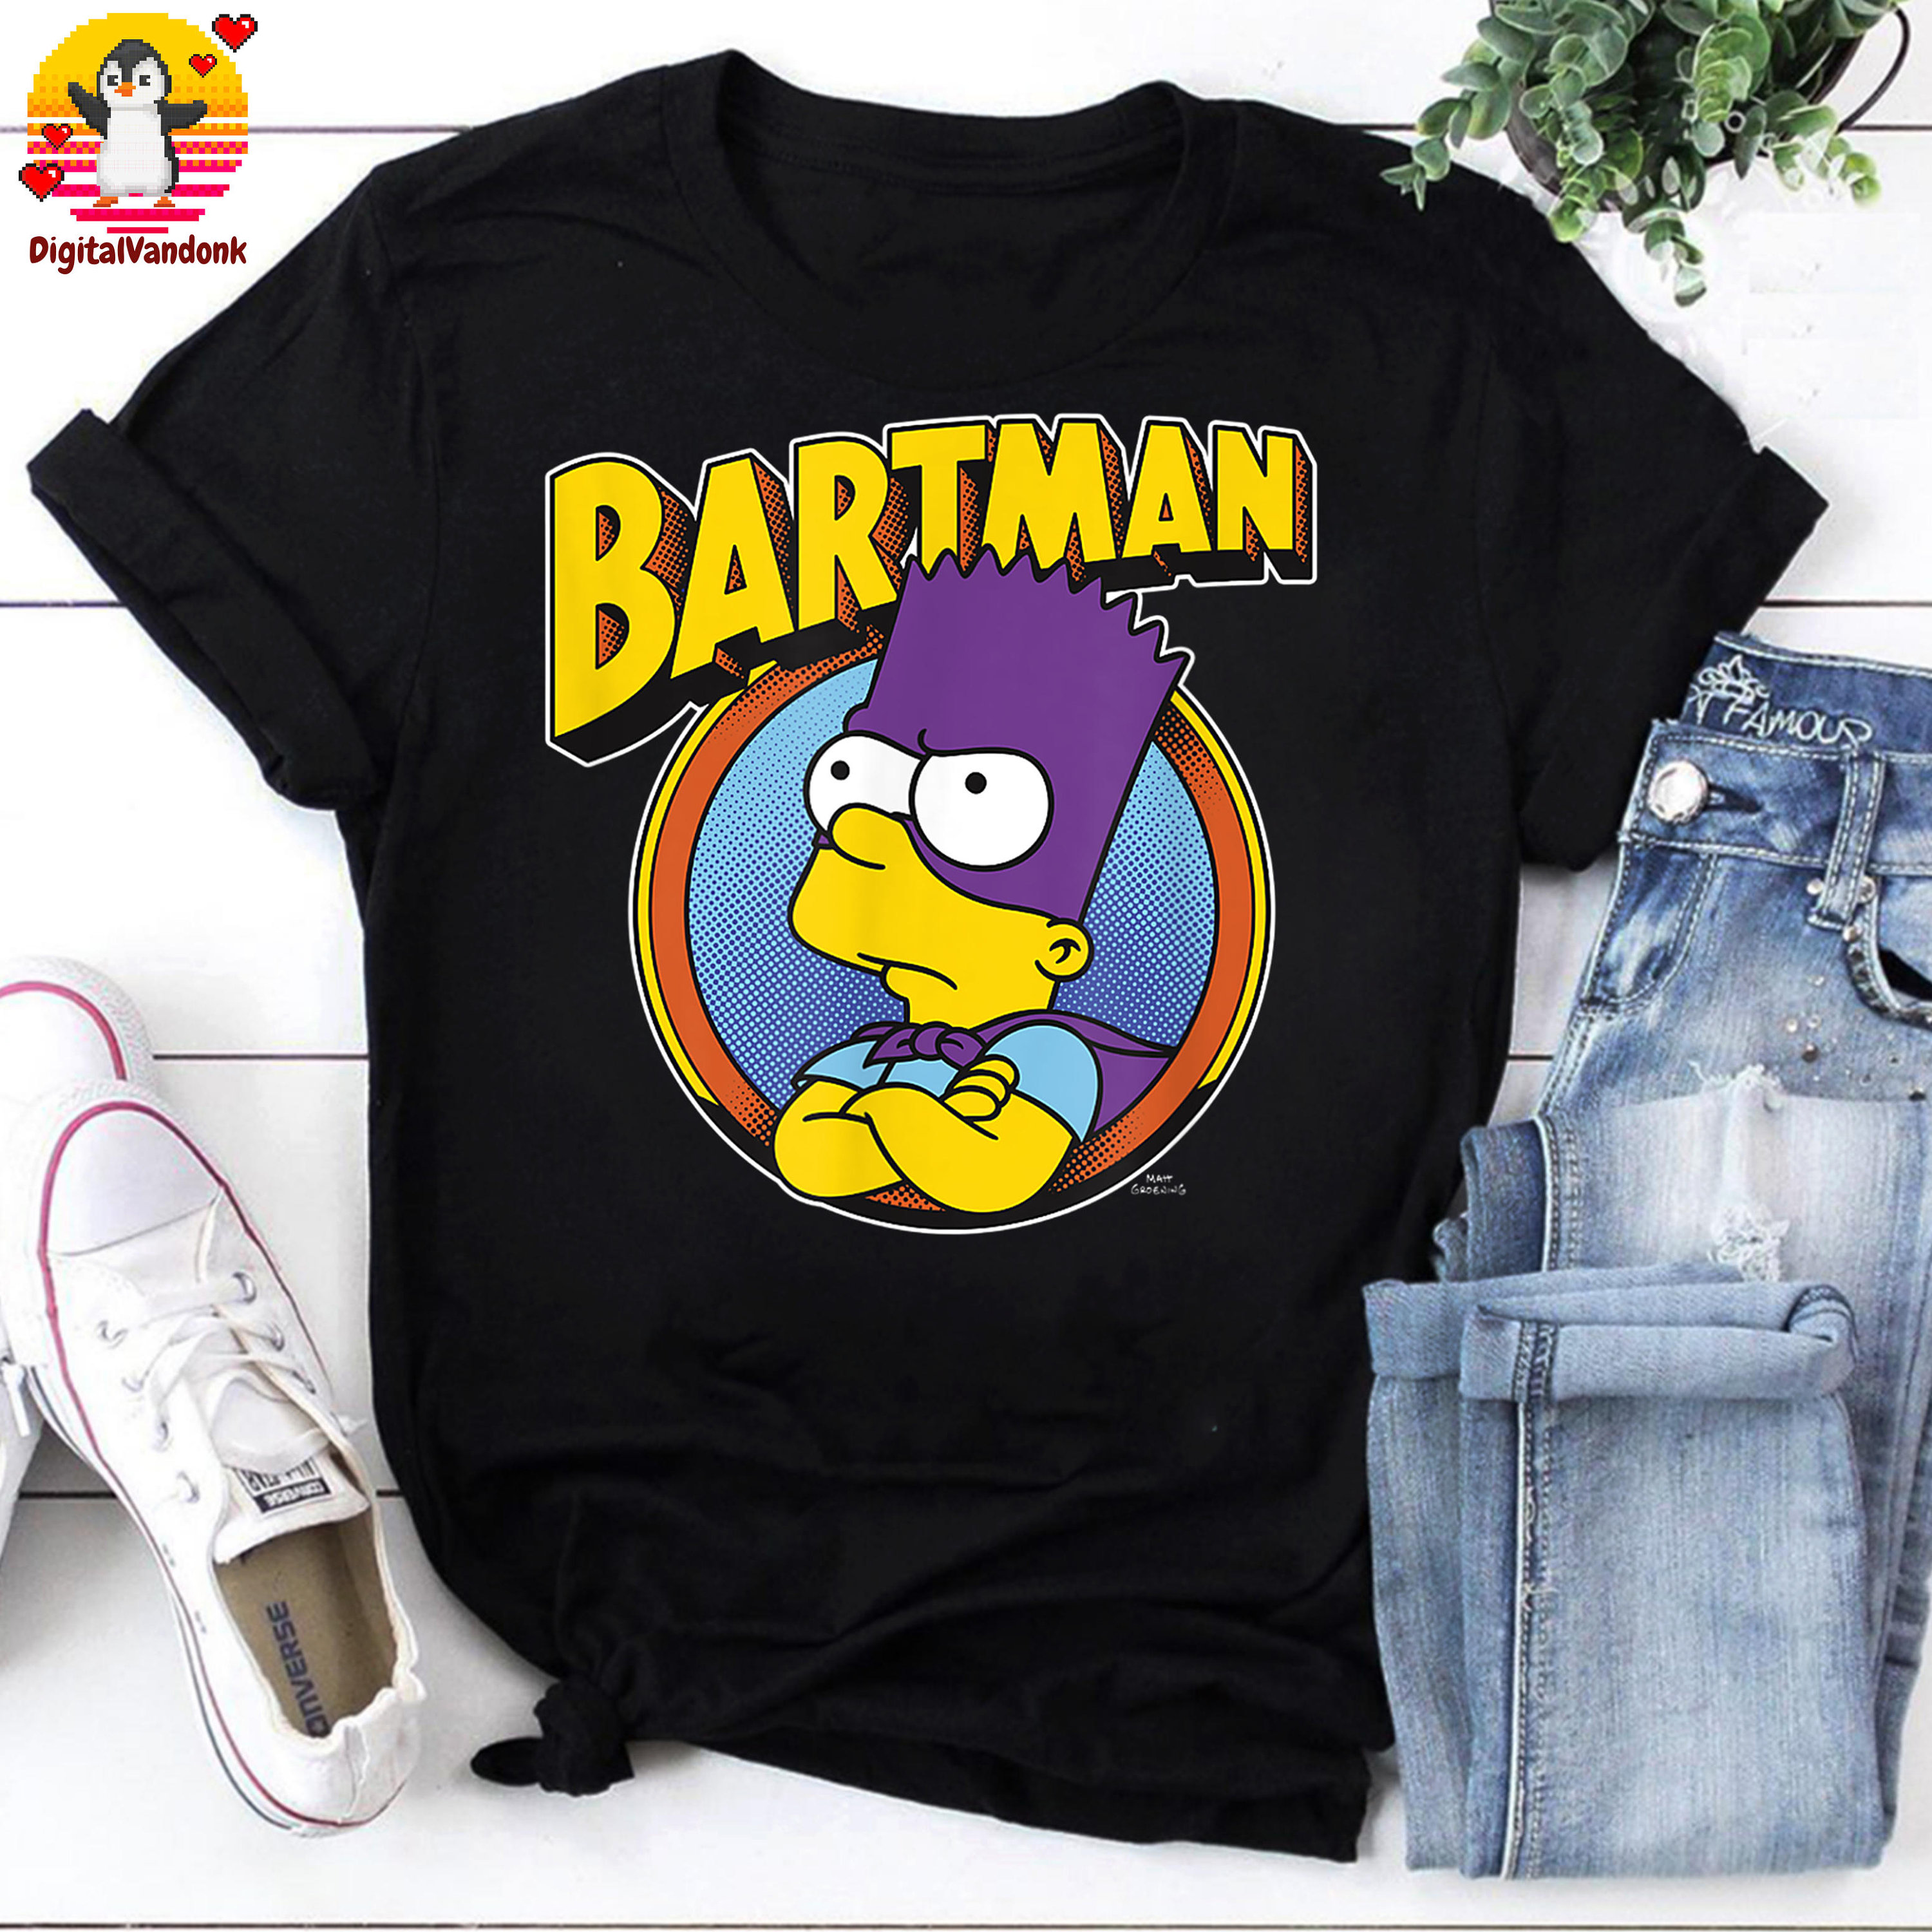 Tee Shirt Vintage Bartman 